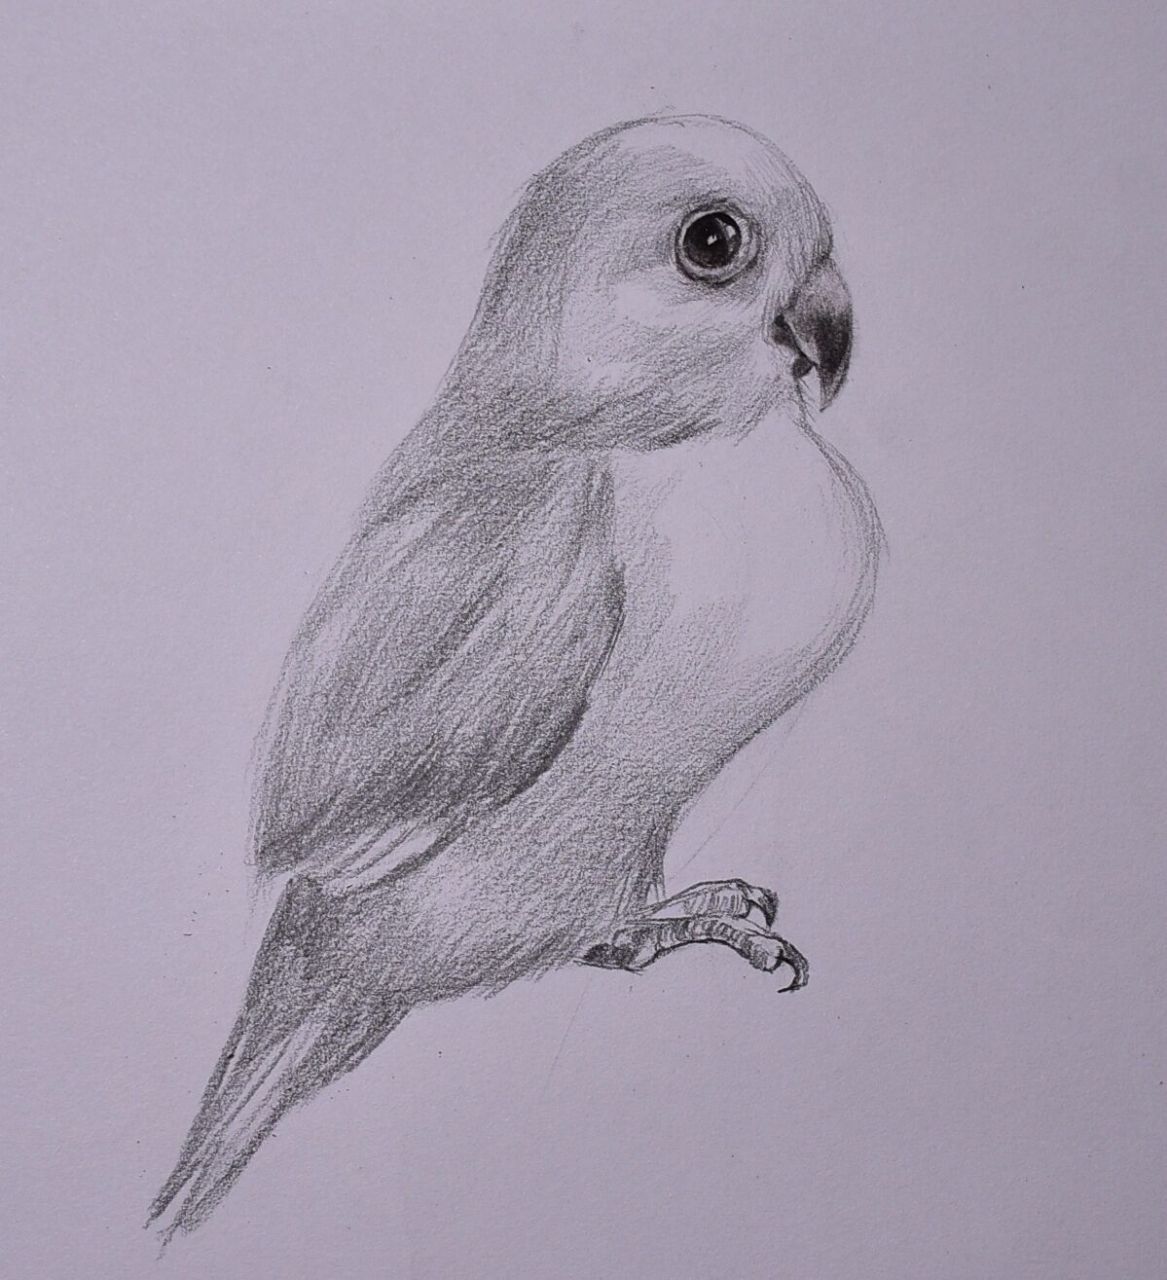 简单易学的素描动物「牡丹鹦鹉」 画鸟相对比较简单,造型容易画,画的